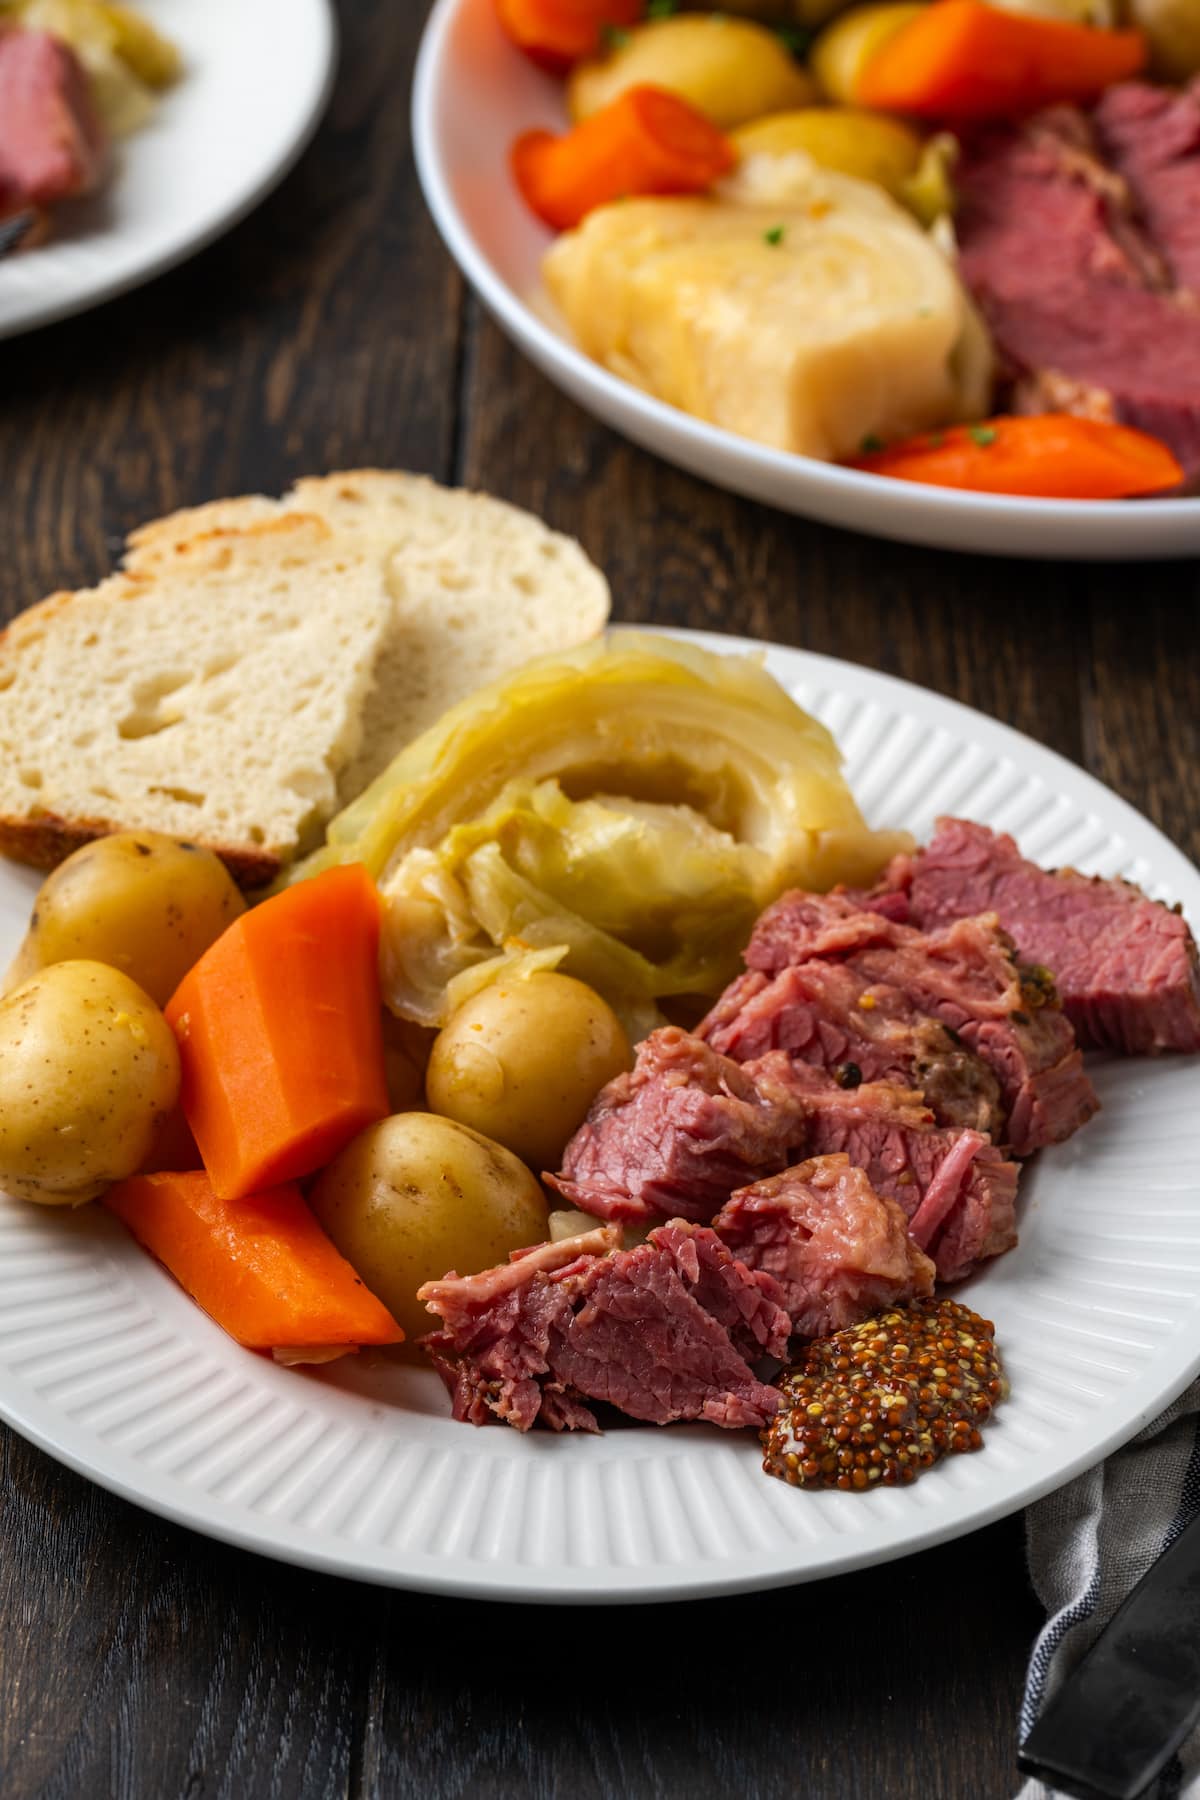 In Scheiben geschnittenes Corned Beef auf einem Teller neben Kohl, Kartoffeln, Karotten und Brotscheiben, mit einem zweiten Teller im Hintergrund.